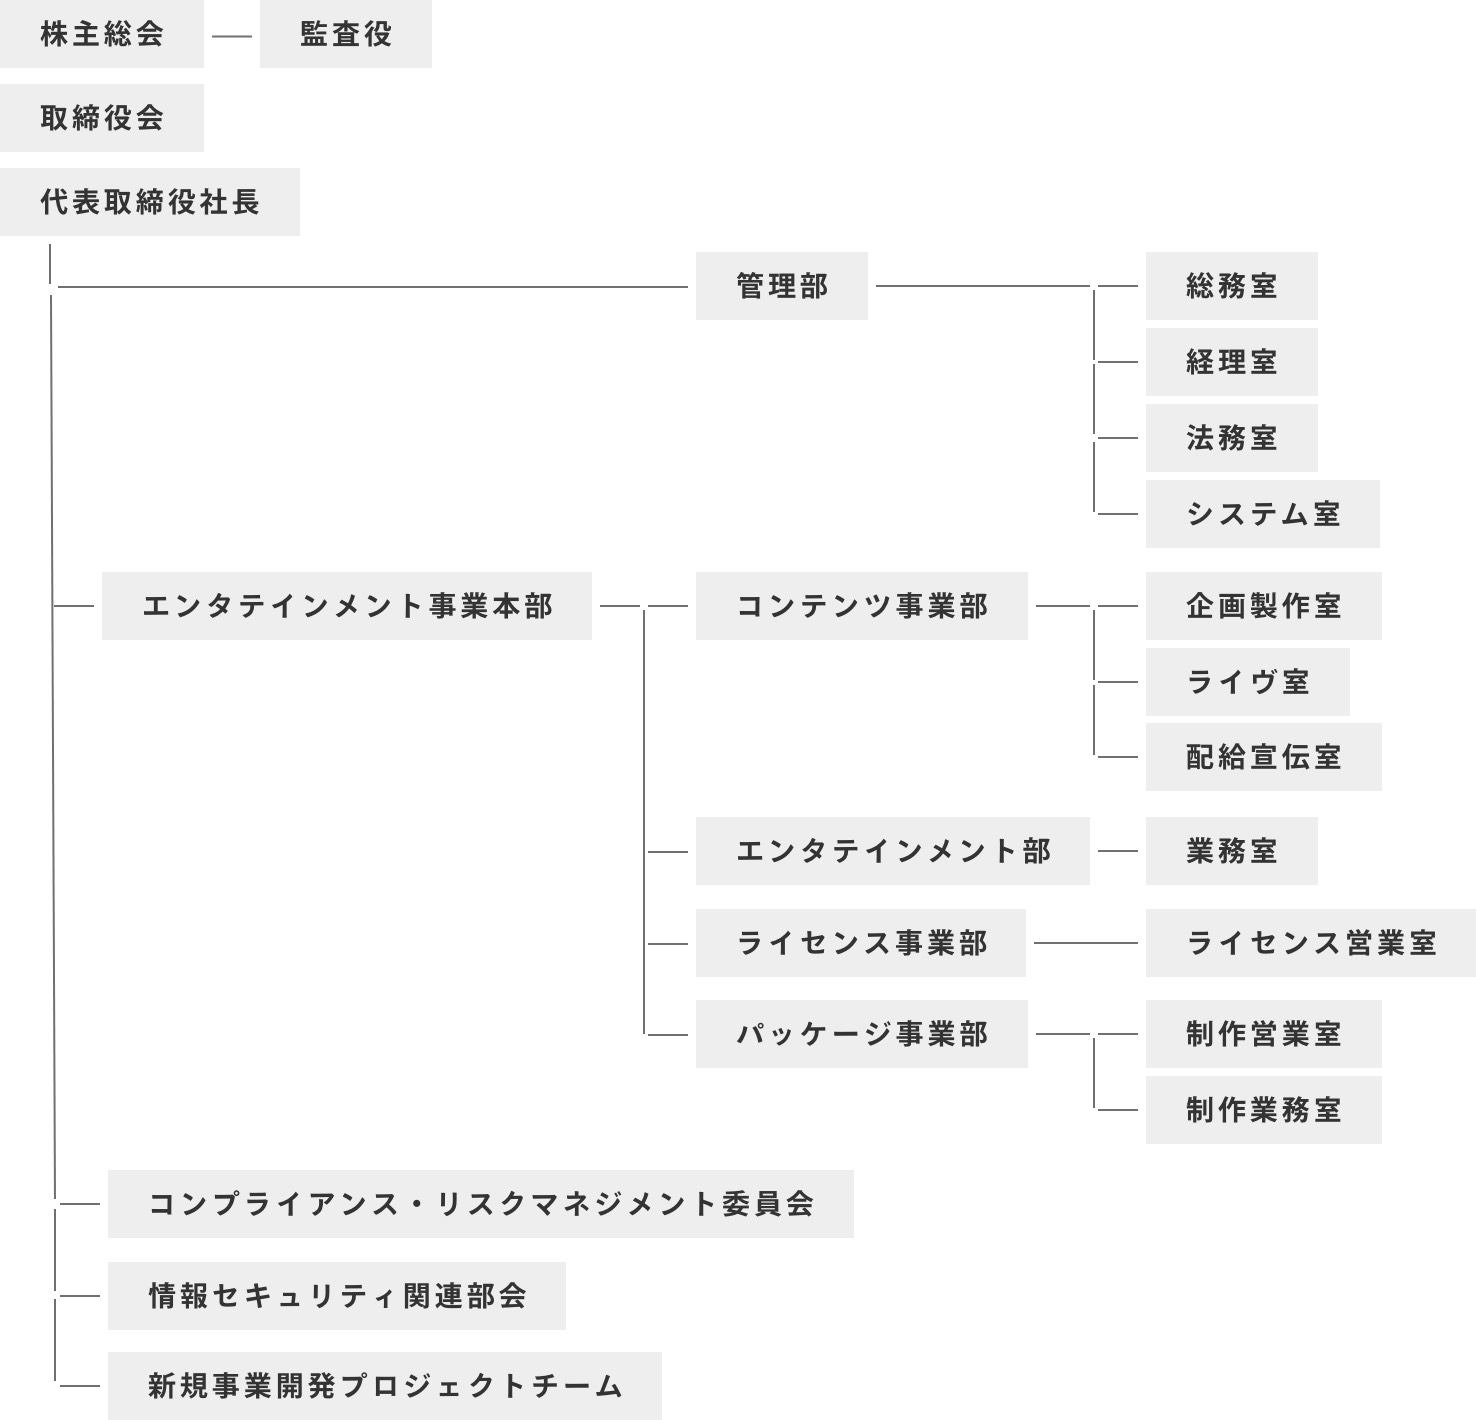 ORGANIZATION CHART組織図